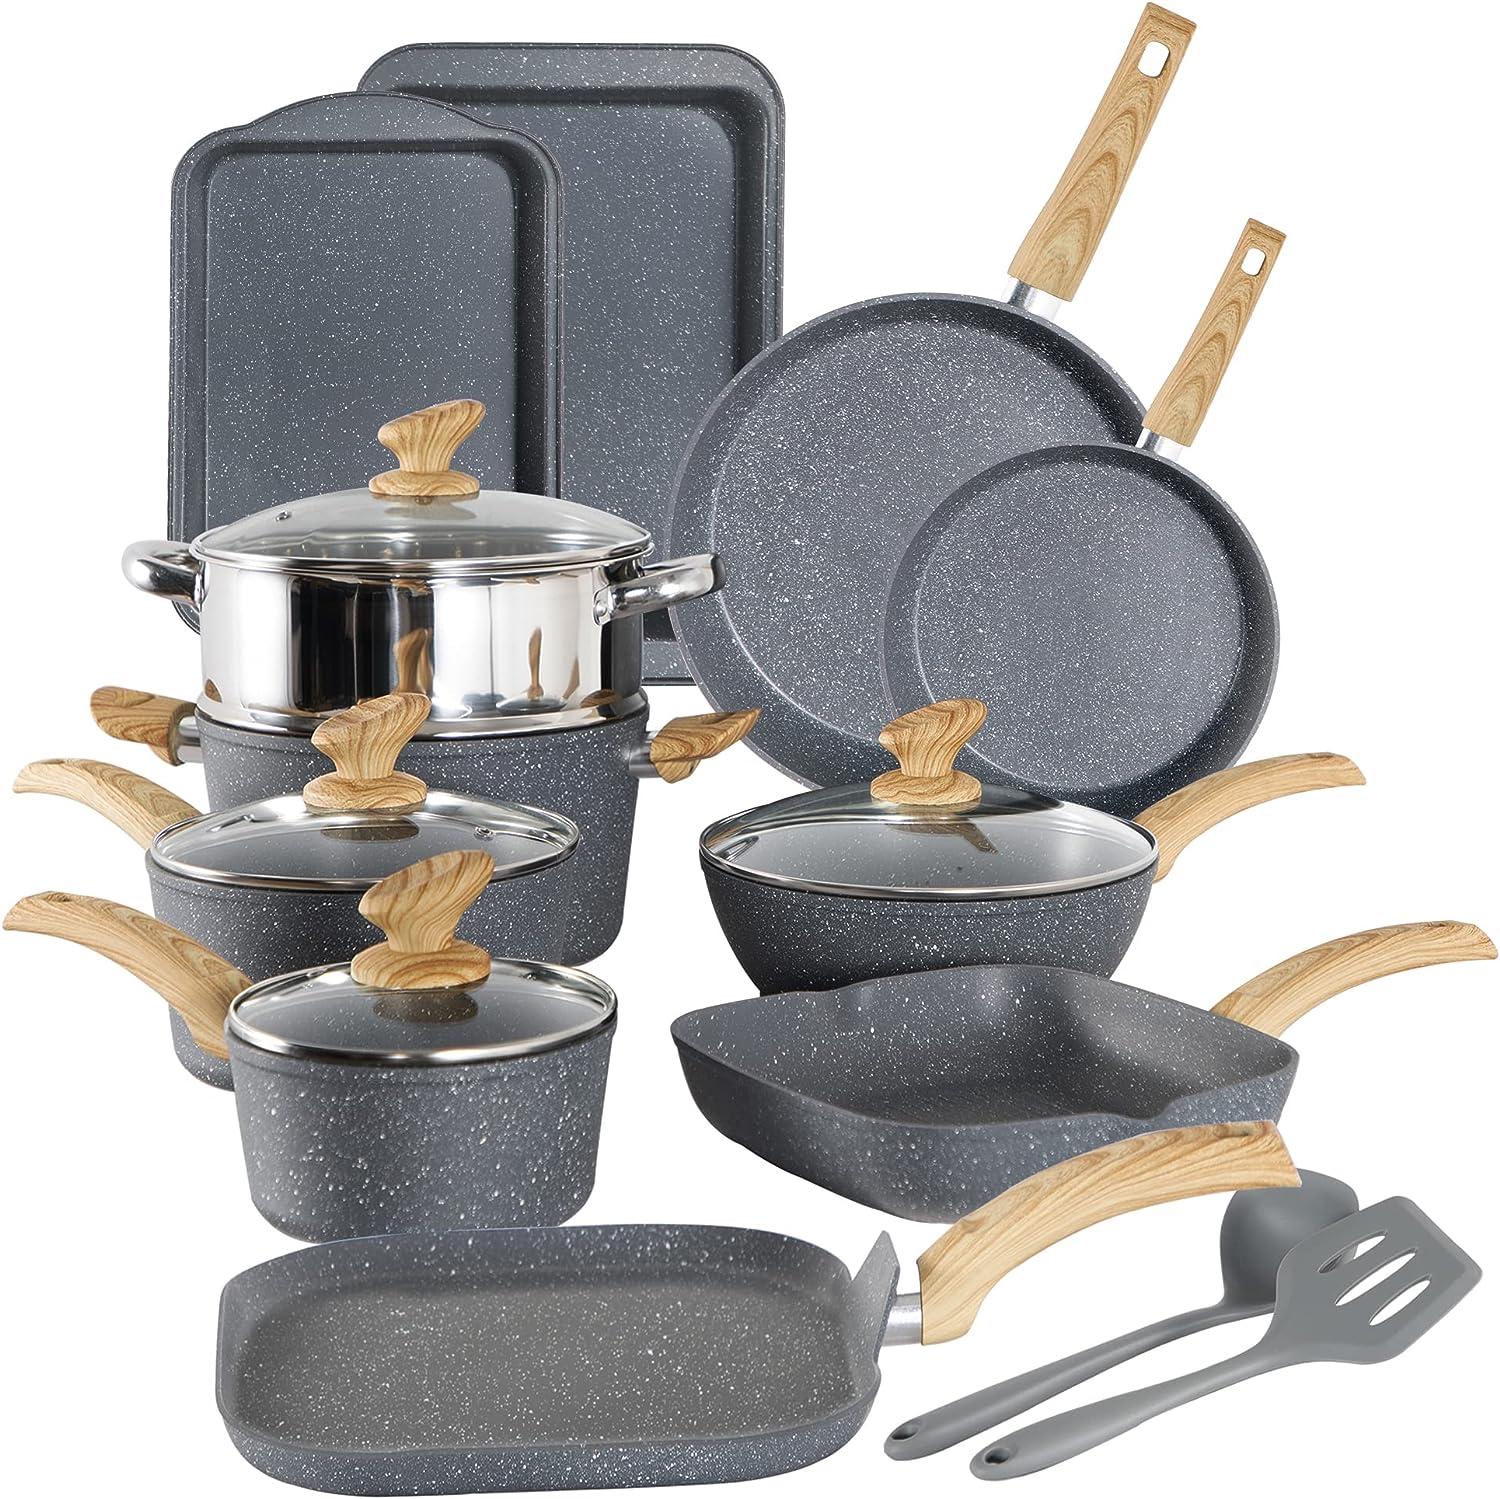 Bazova Pots and Pans Set Nonstick with Detachable Handles, 10 Pcs